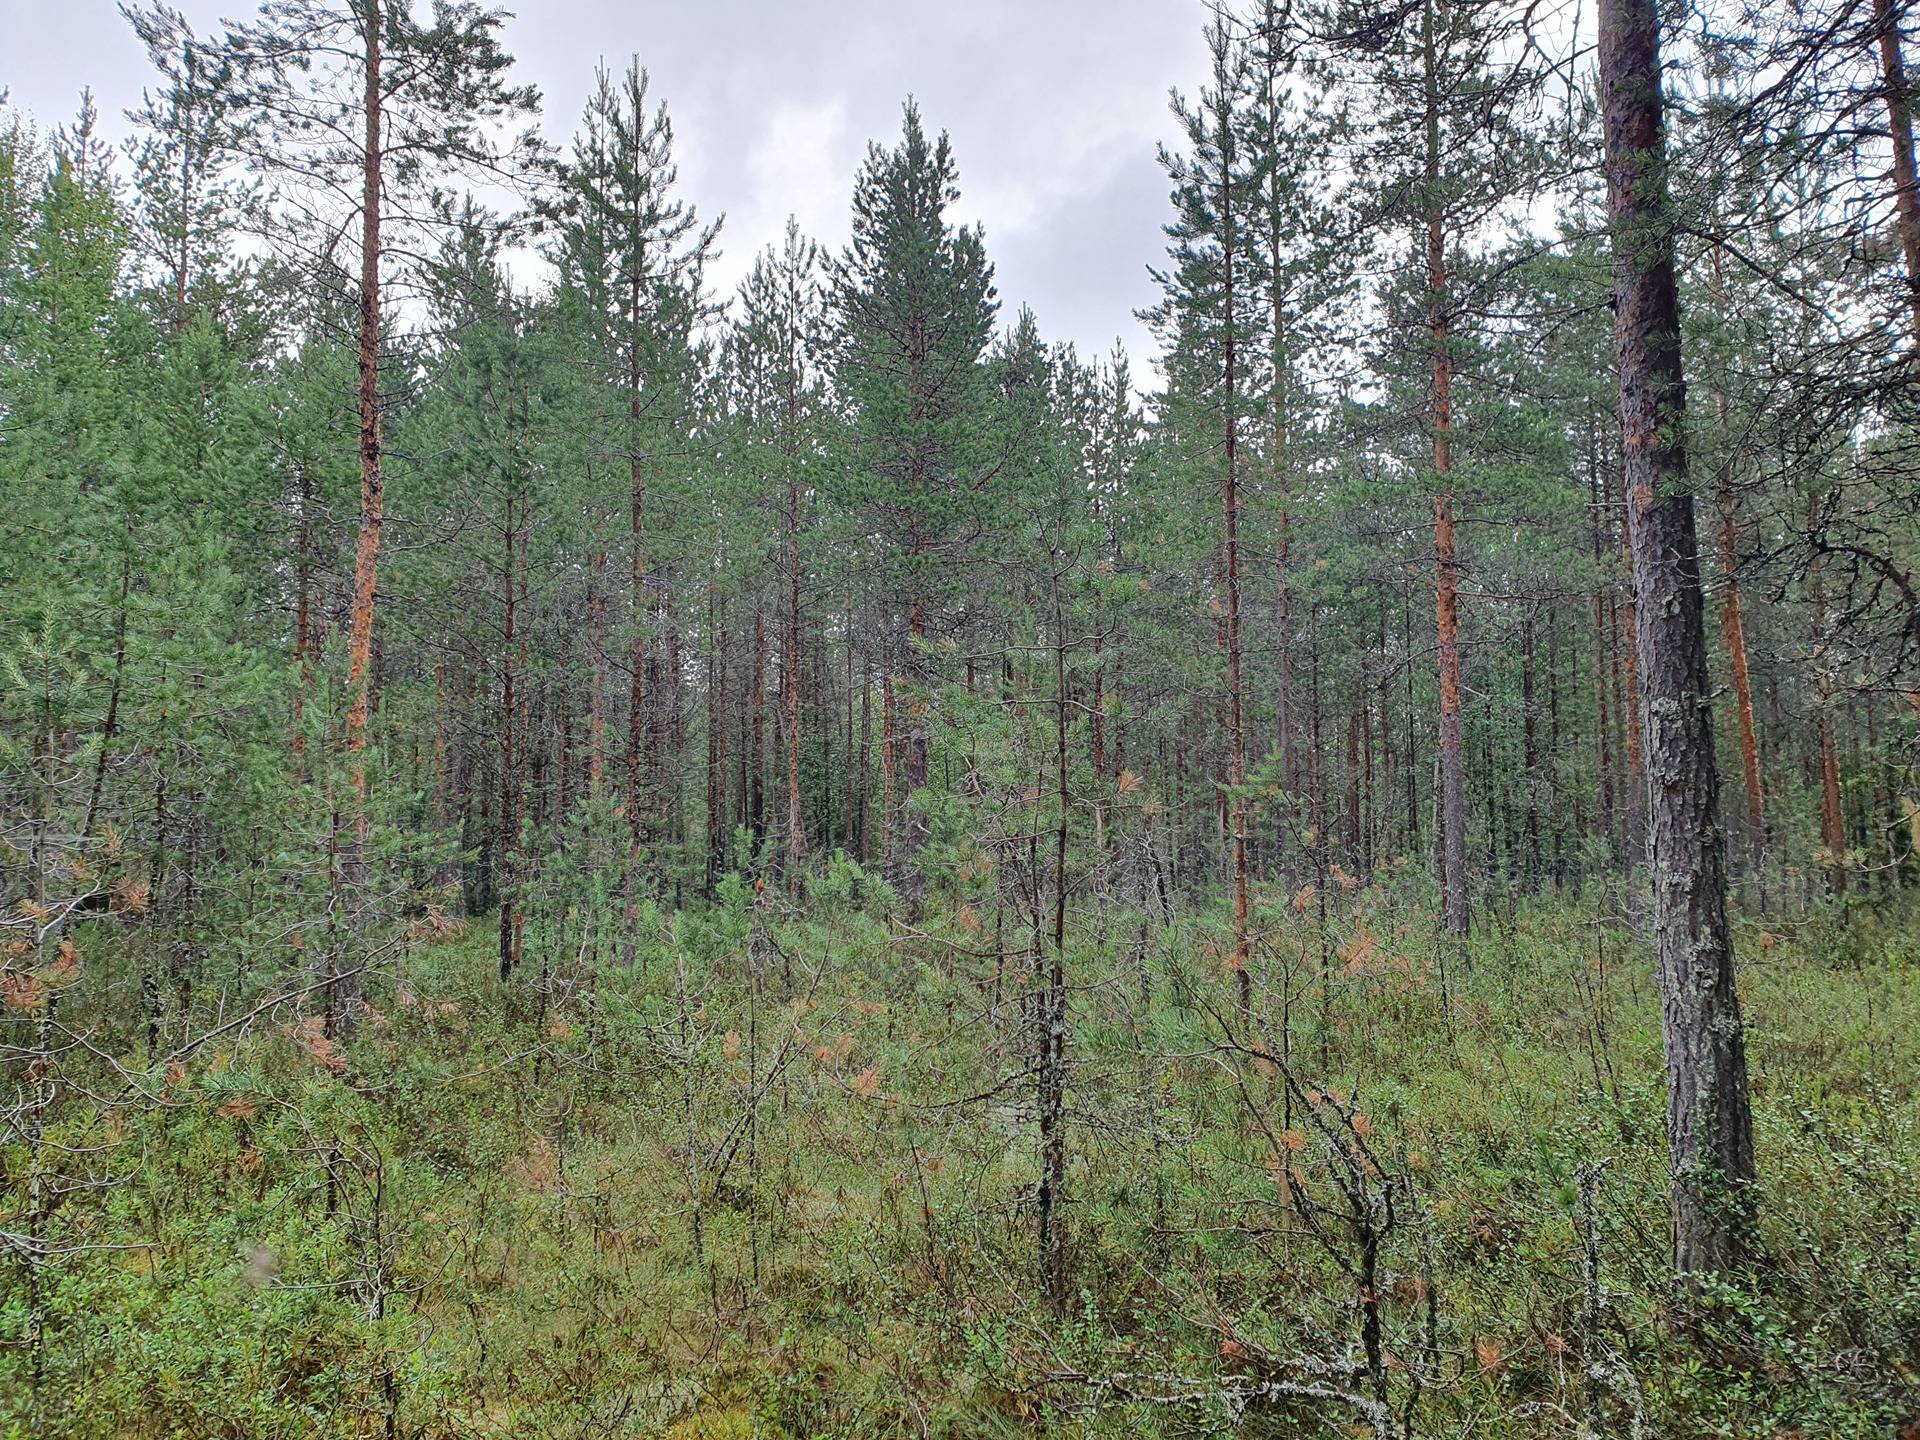 PEHKOLA 889-411-20-14 metsäkiinteistö 49,87 ha Kemilänkylässä n. 9 km Utajärven kk:ltä 44